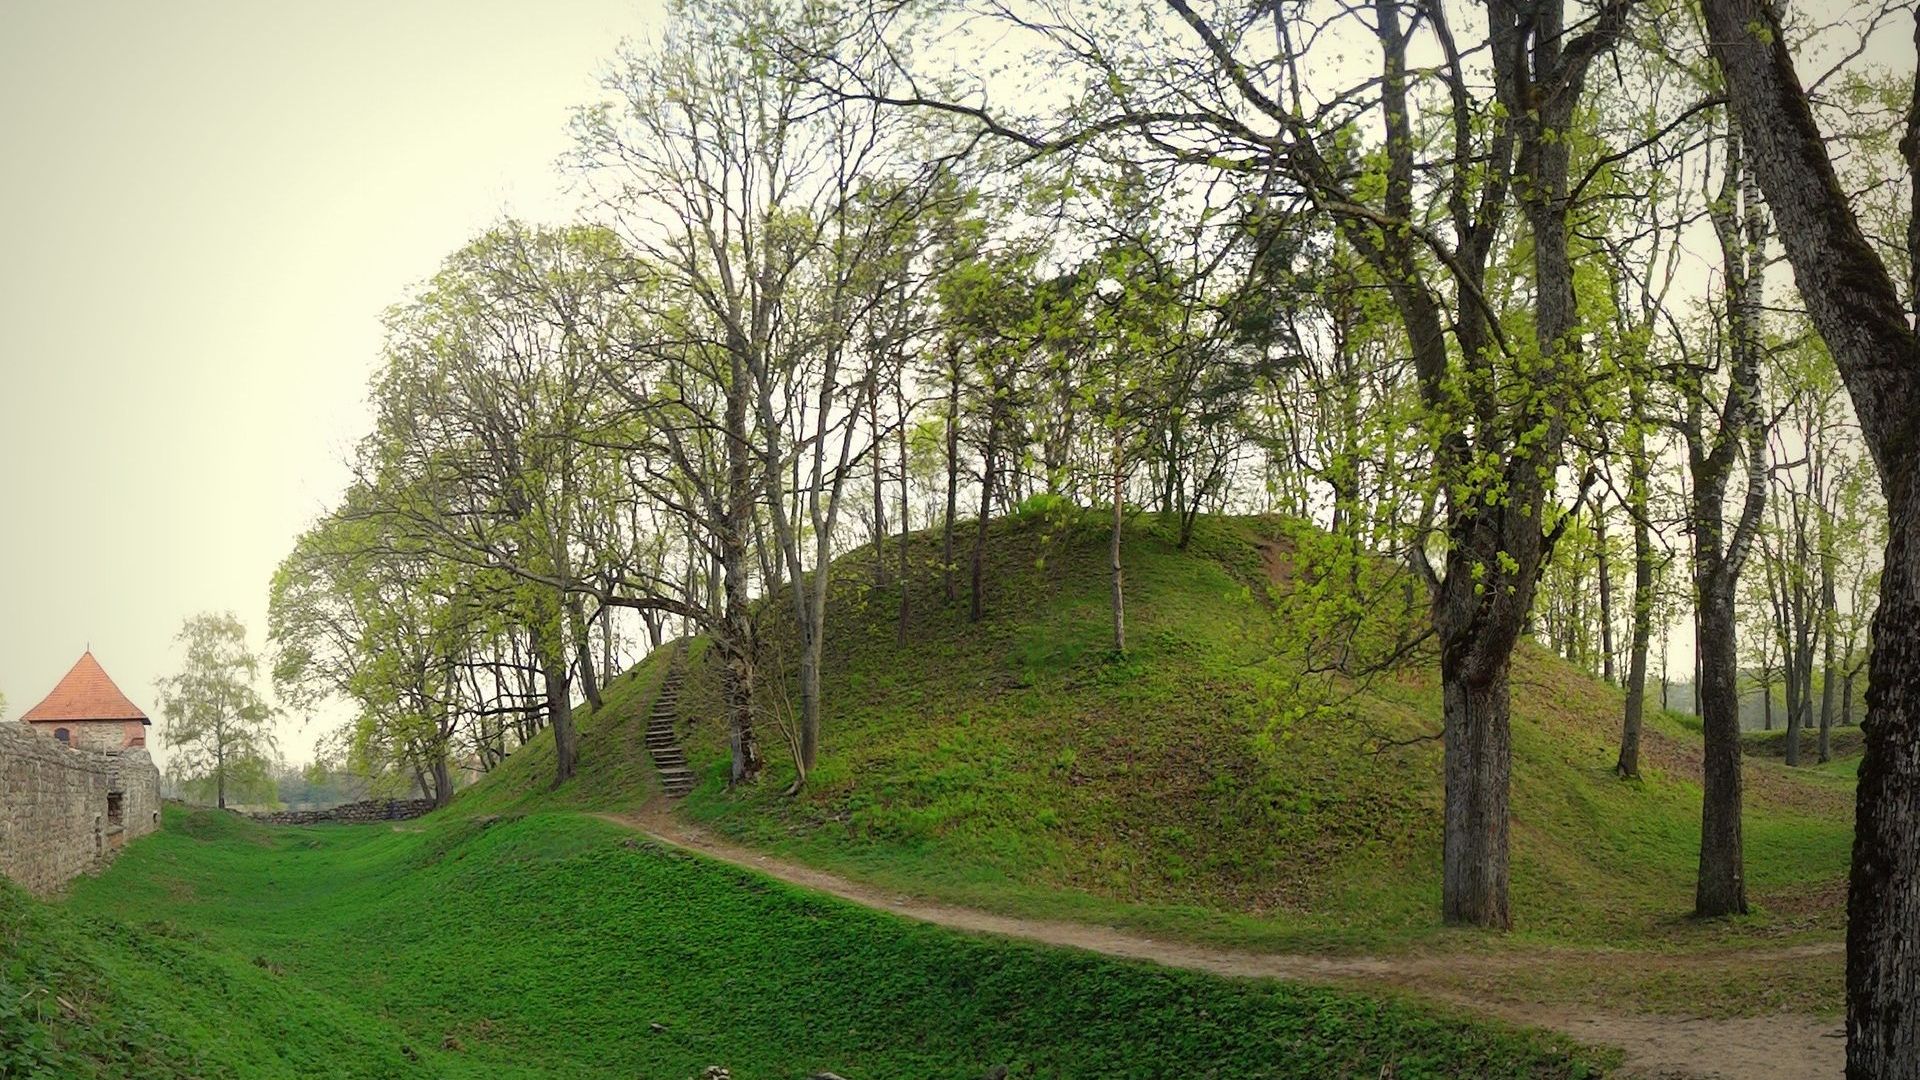 Trakai Mound